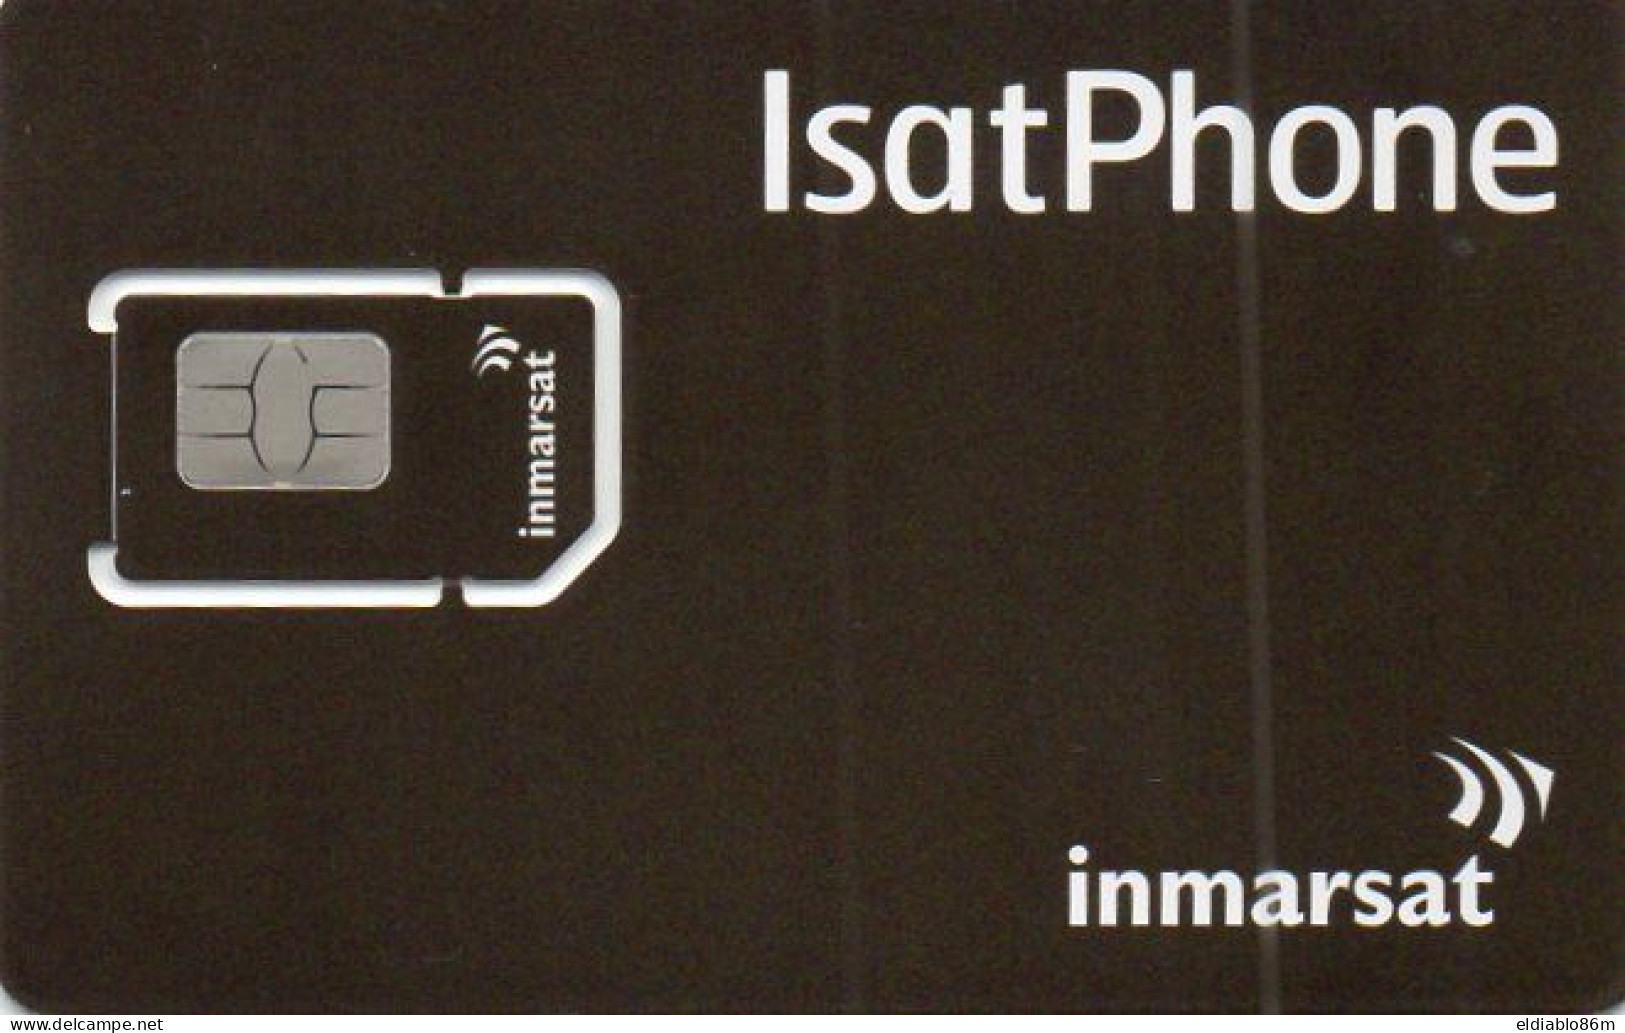 GSM CARD - SATELLITE CARD - INMARSAT - ISATPHONE - MINT - Origine Sconosciuta